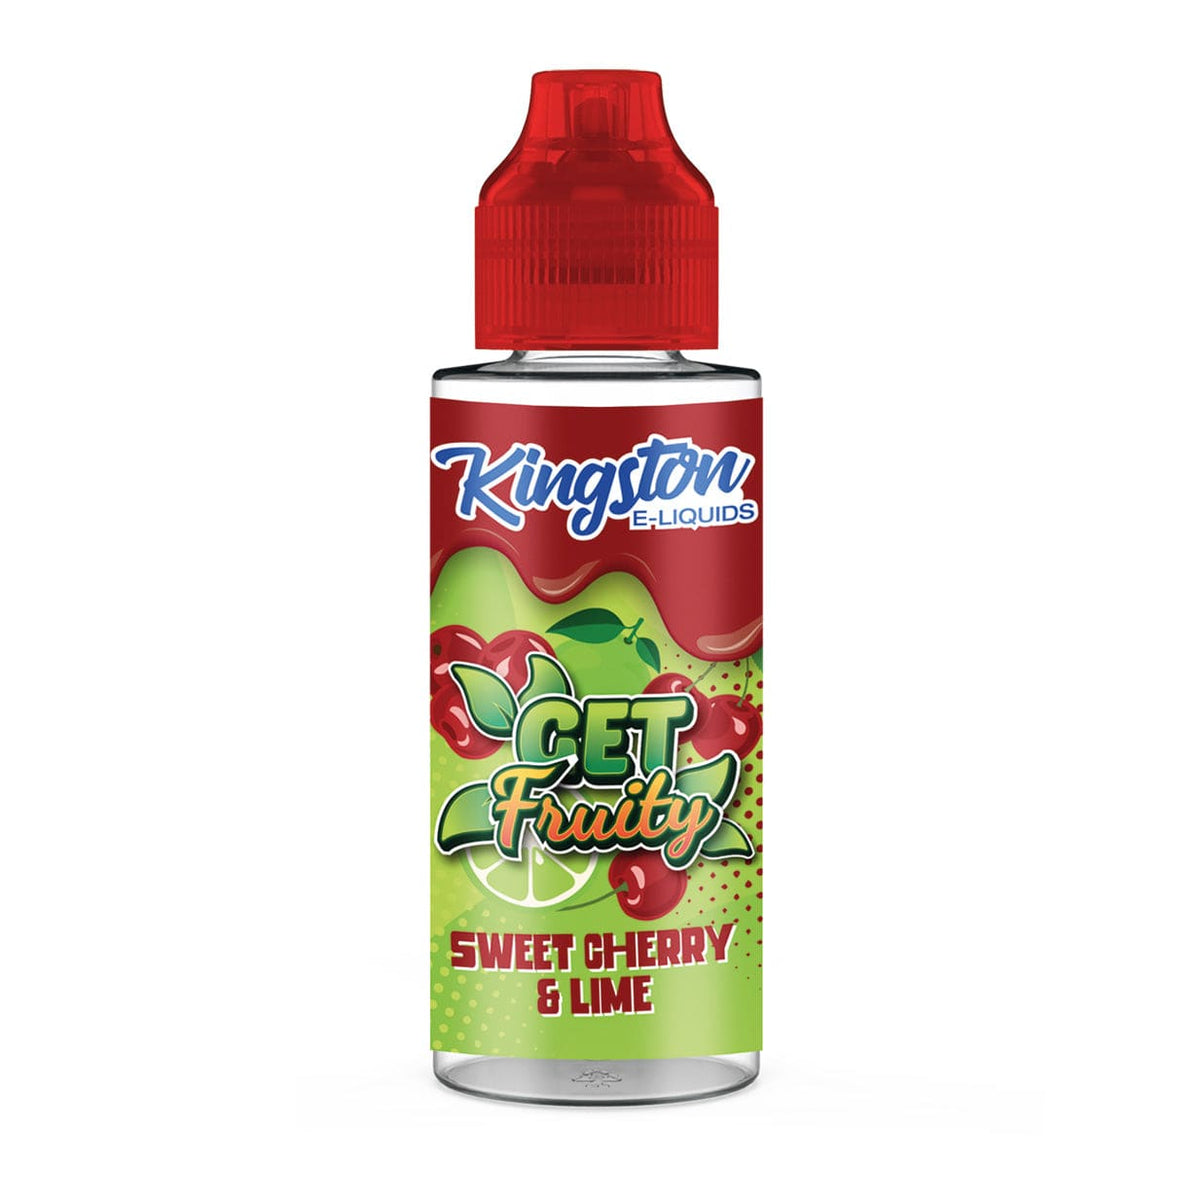 Kingston Get Fruity - Sweet Cherry & Lime - 100ml Shortfill